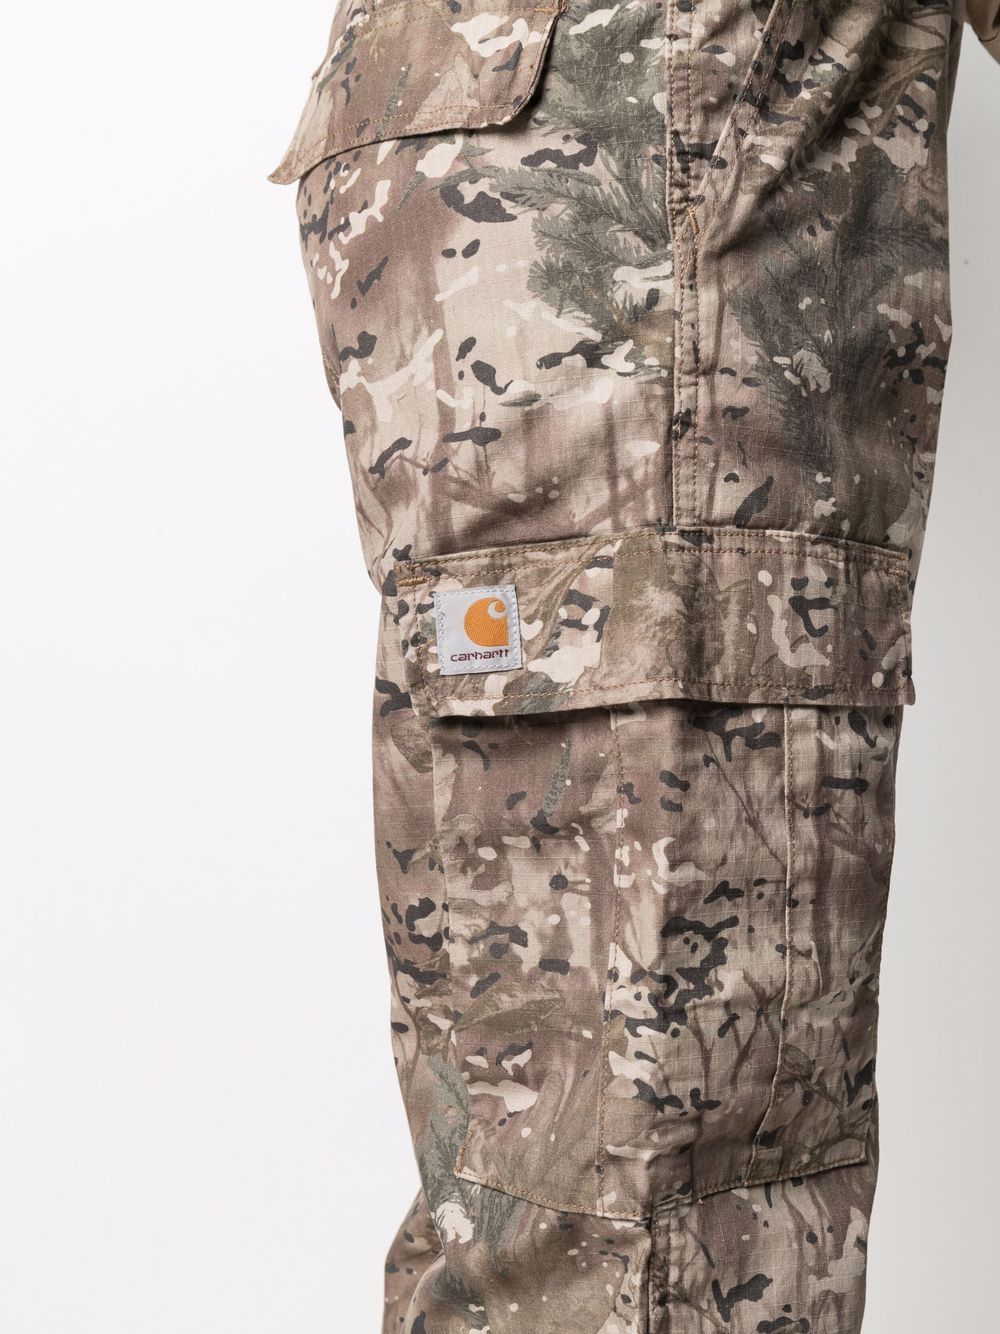 фото Carhartt wip брюки карго с камуфляжным принтом